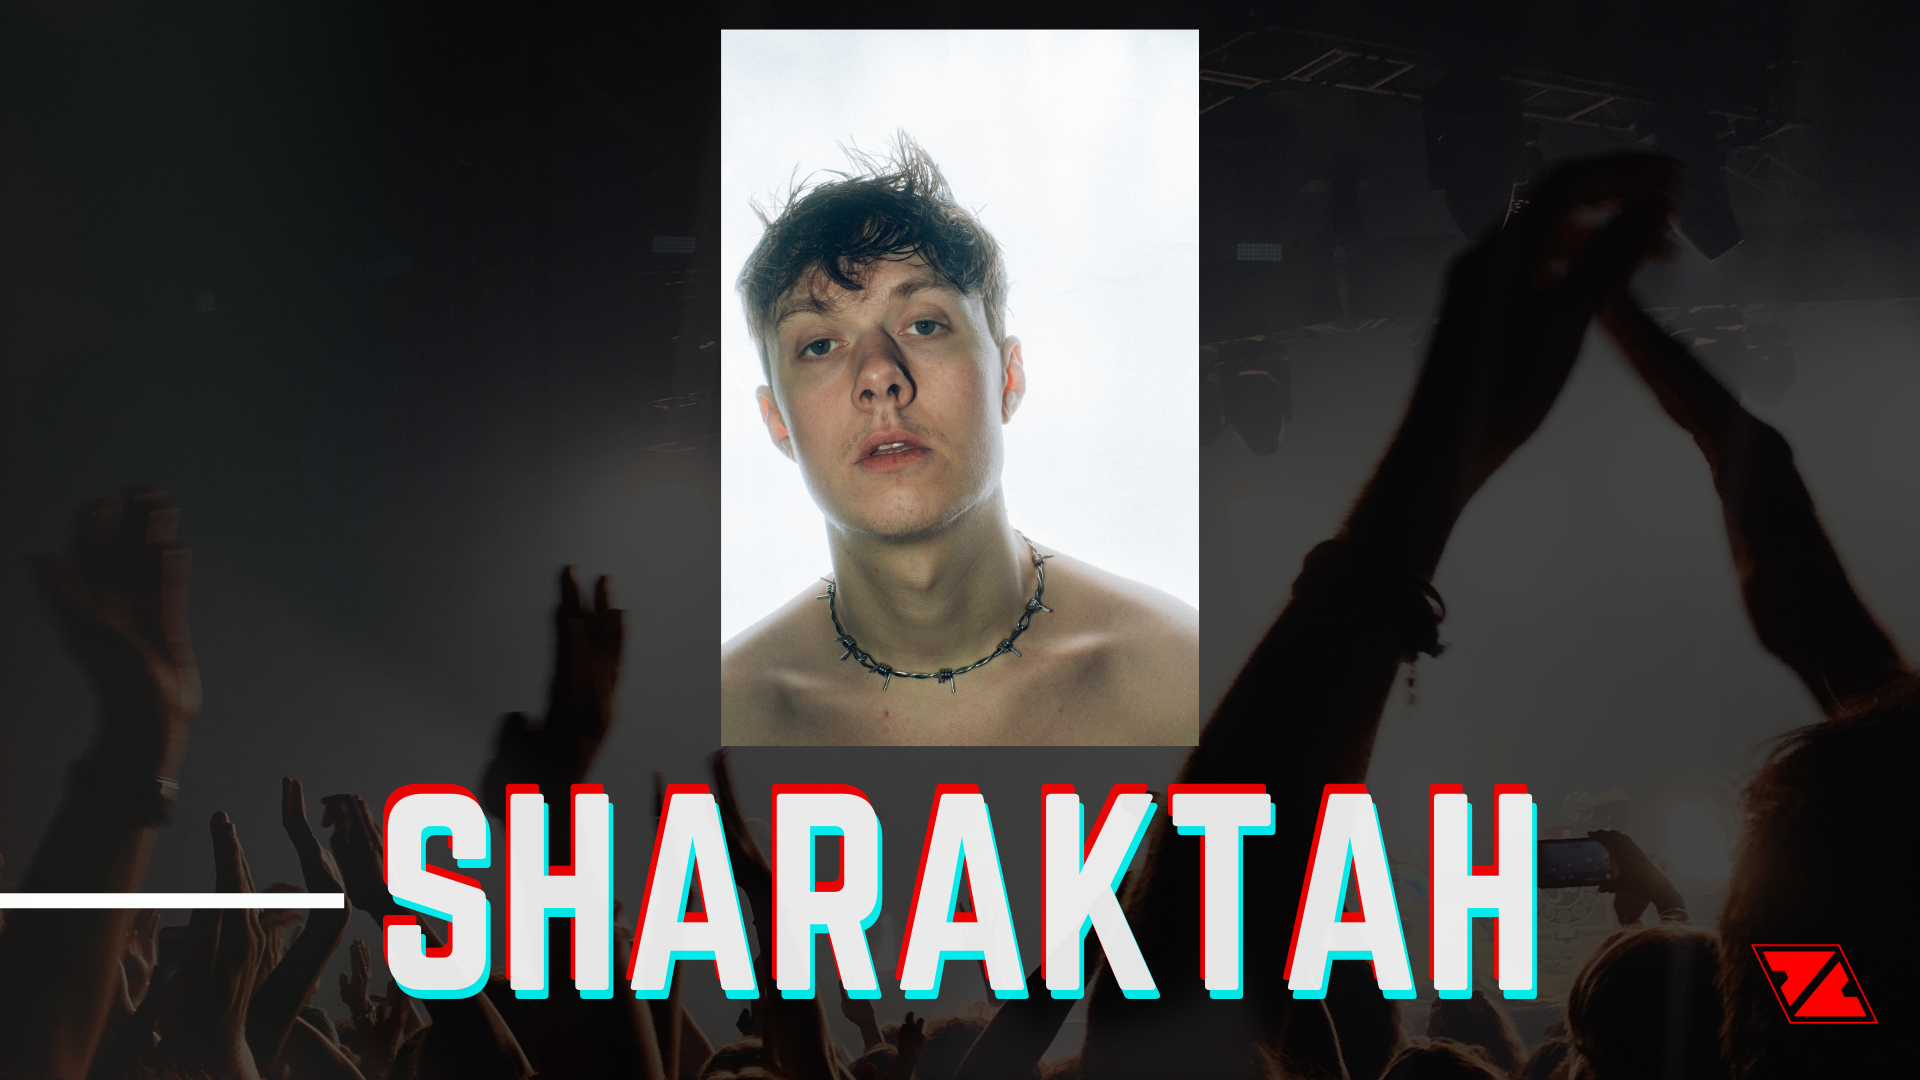 Sharaktah